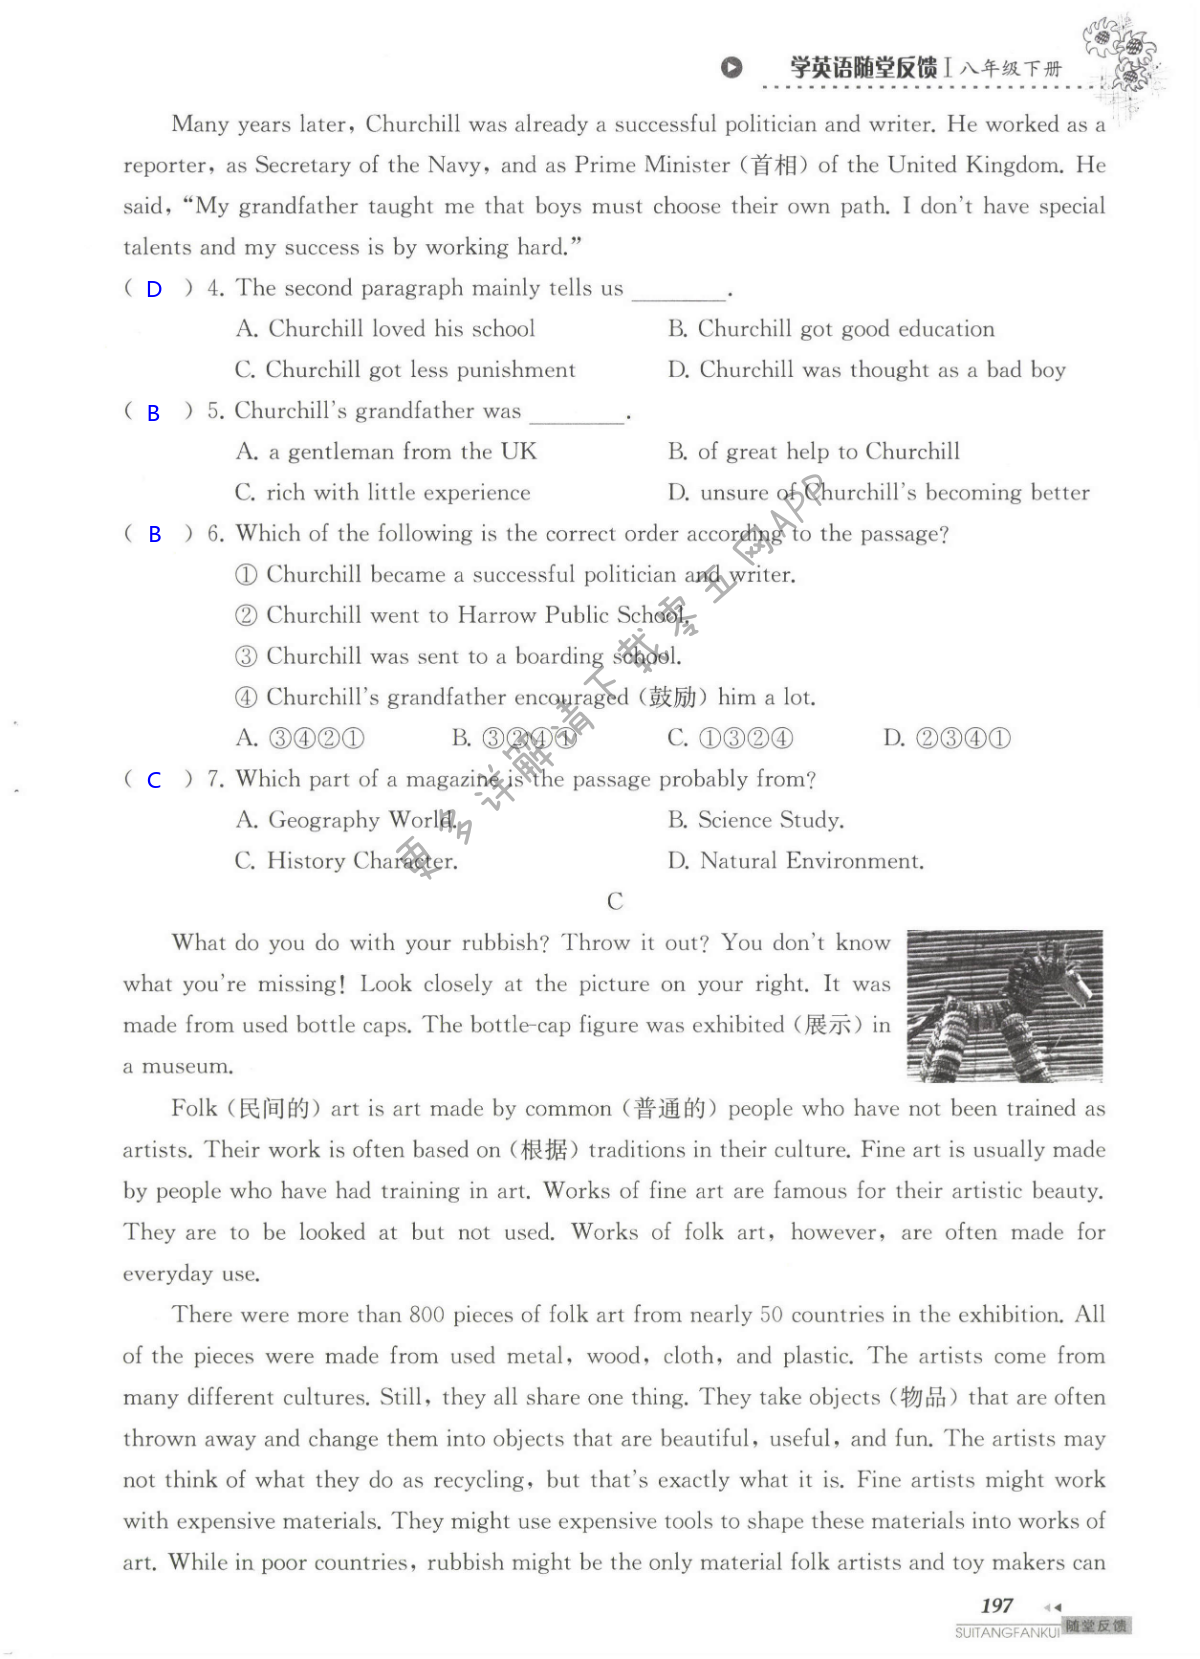 单元综合测试卷  Test for Unit 8 of 8B - 第197页